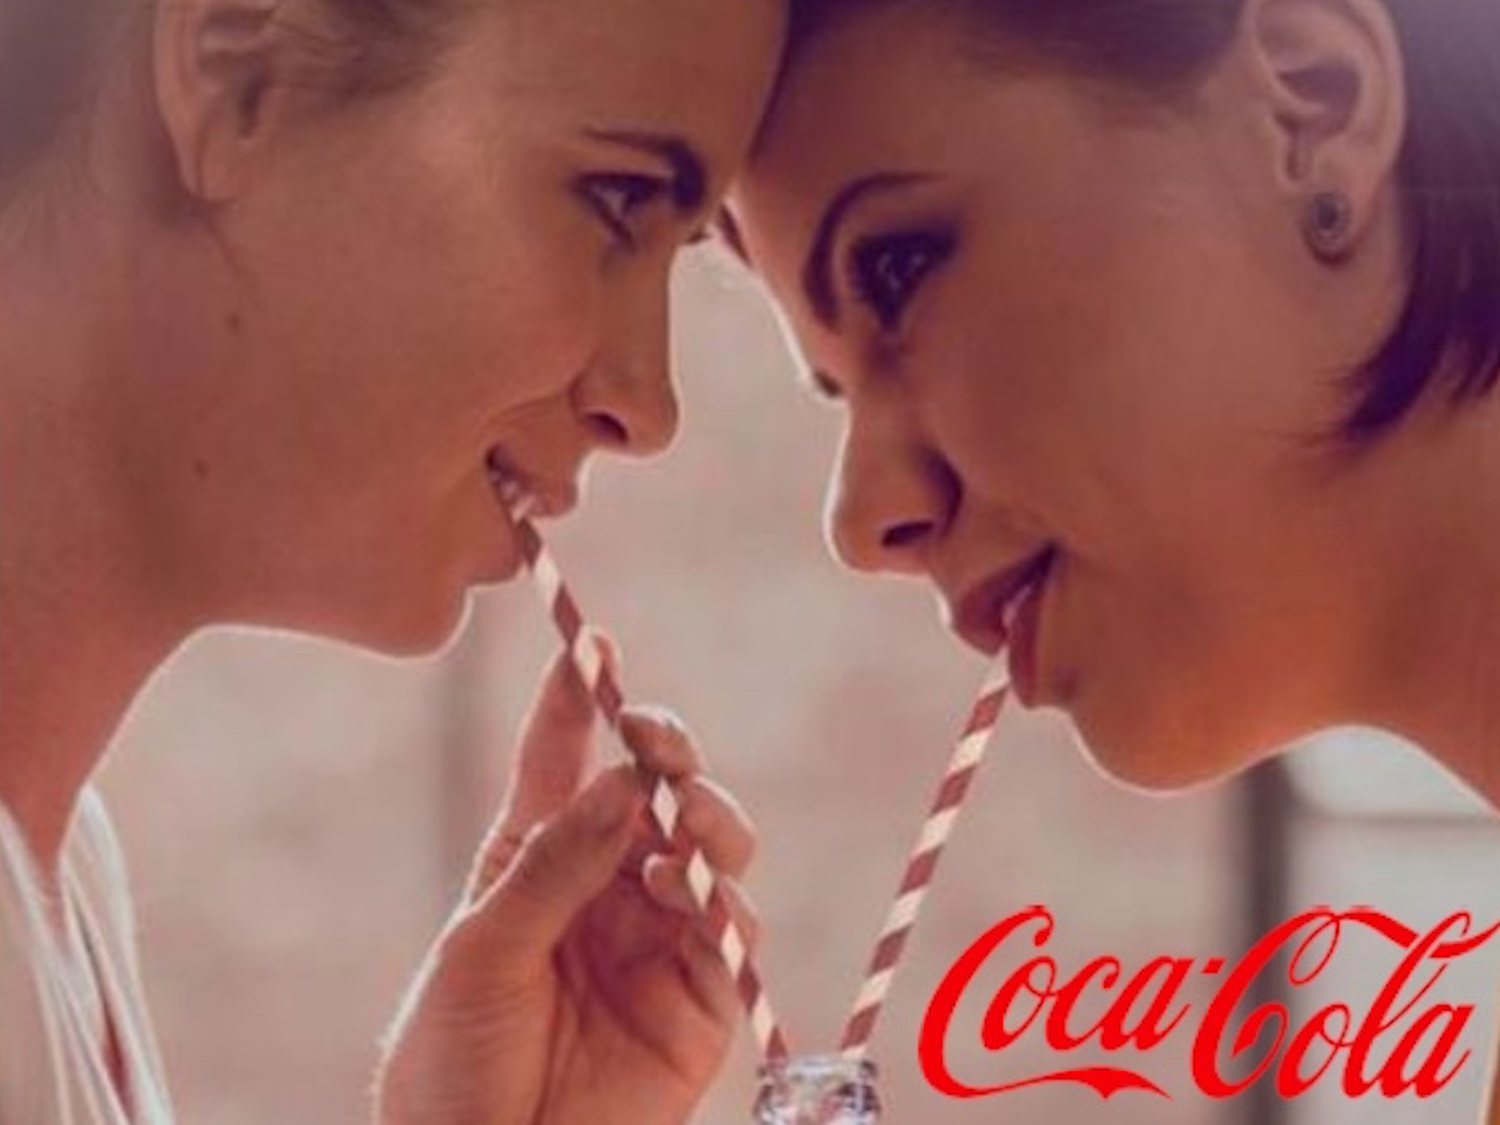 Hungría rechaza la nueva campaña de Coca-Cola que muestra parejas homosexuales